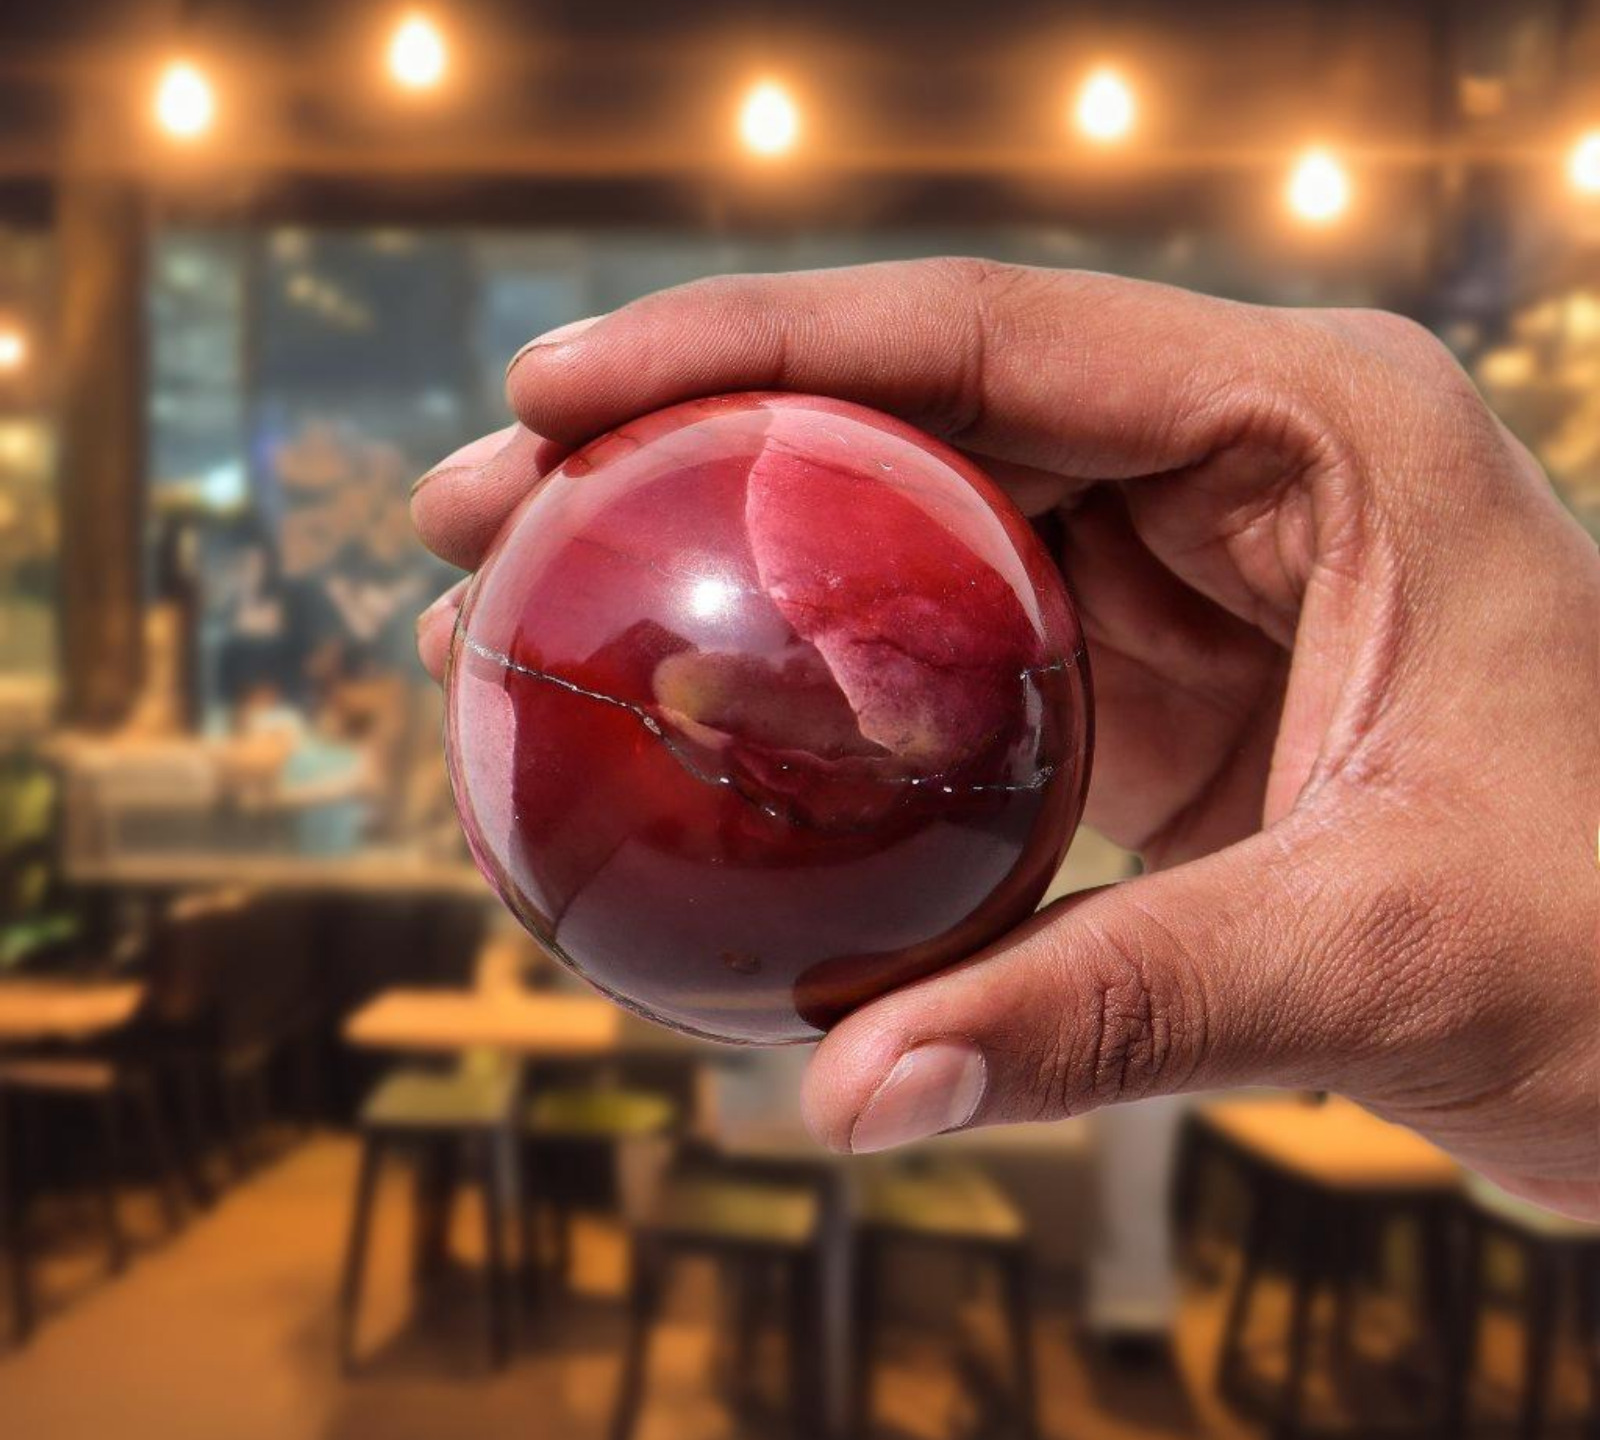 Red Mookaite Jasper Healing Sphere 60MM Vibrant Energy Stone Ball for Meditation